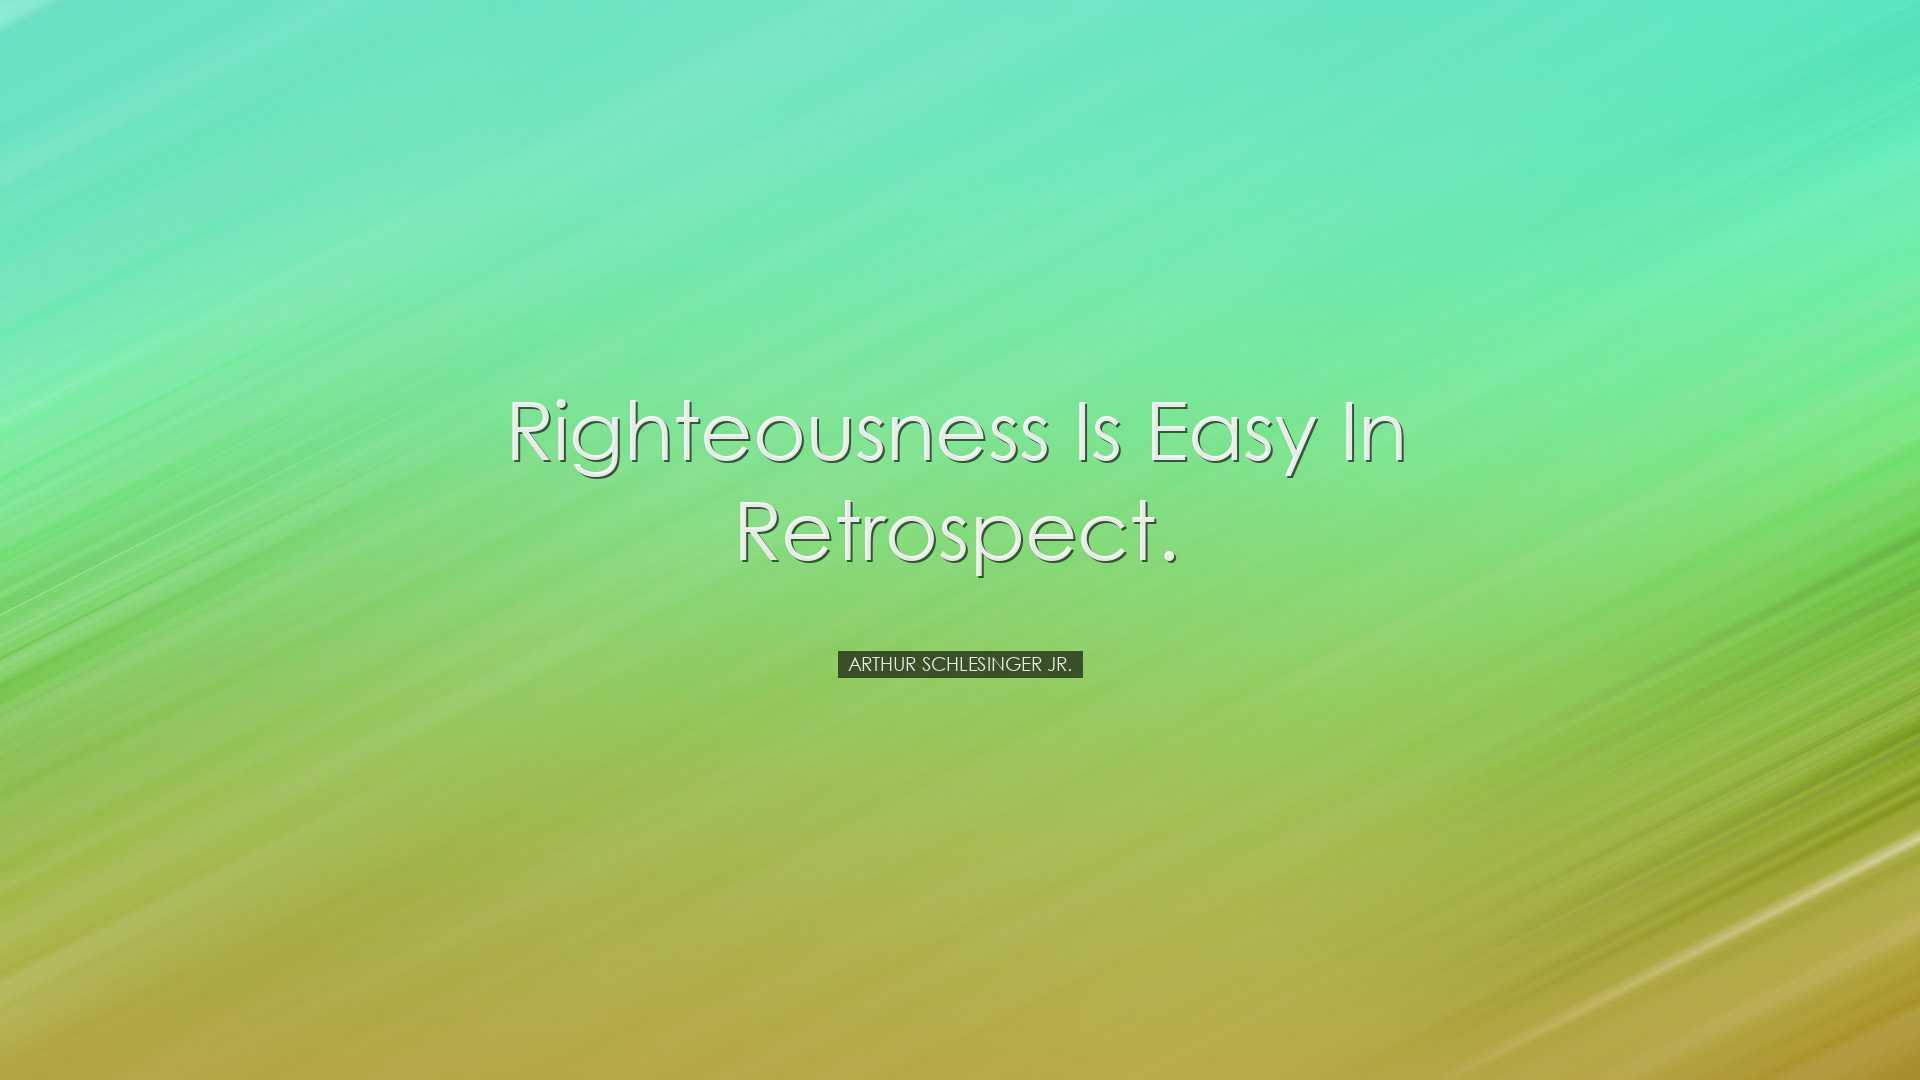 Righteousness is easy in retrospect. - Arthur Schlesinger Jr.